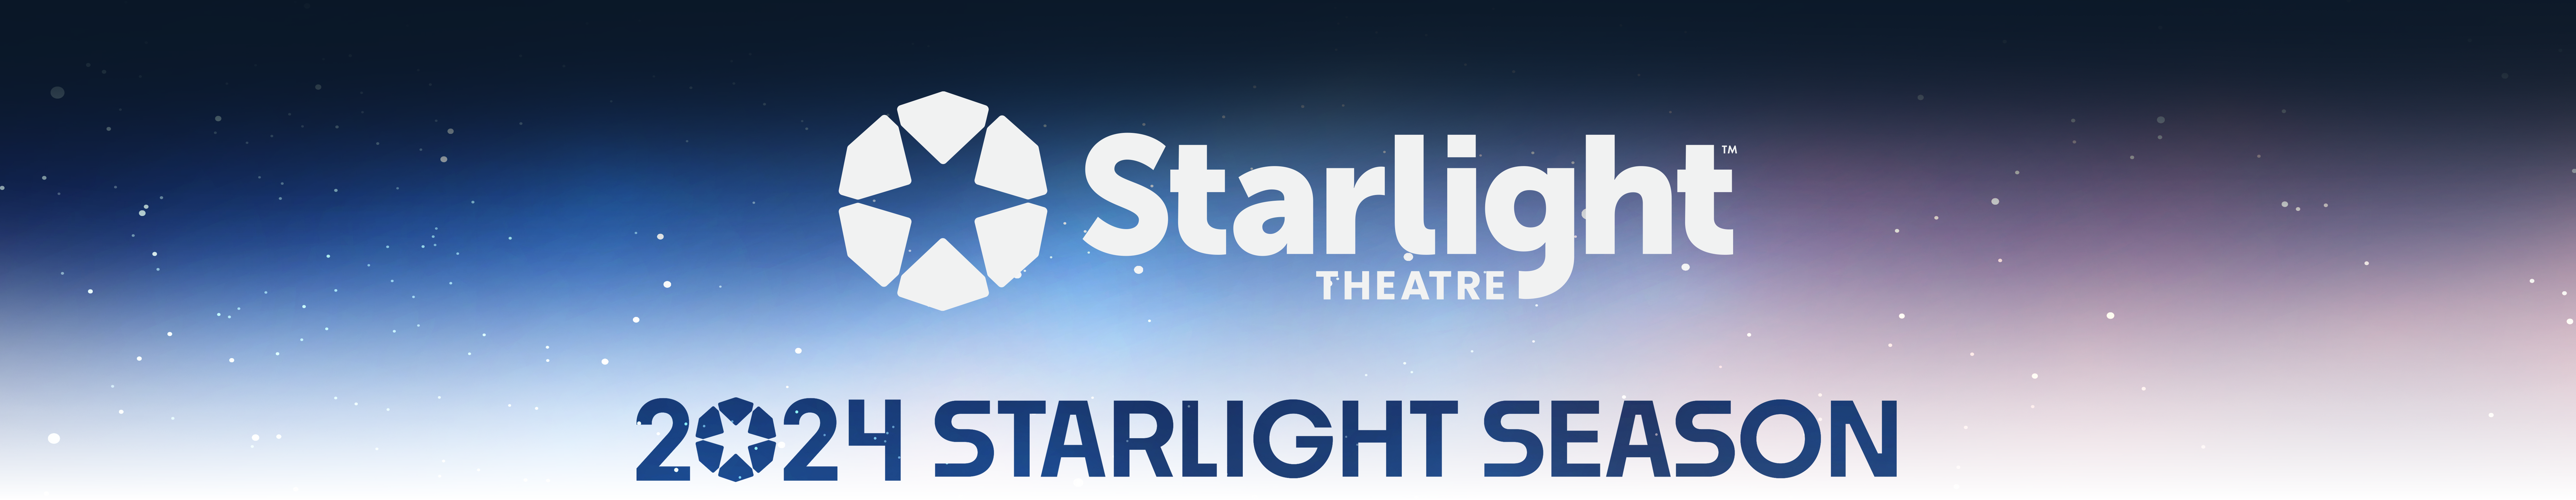 Starlight Theatre 2024 Starlight Season